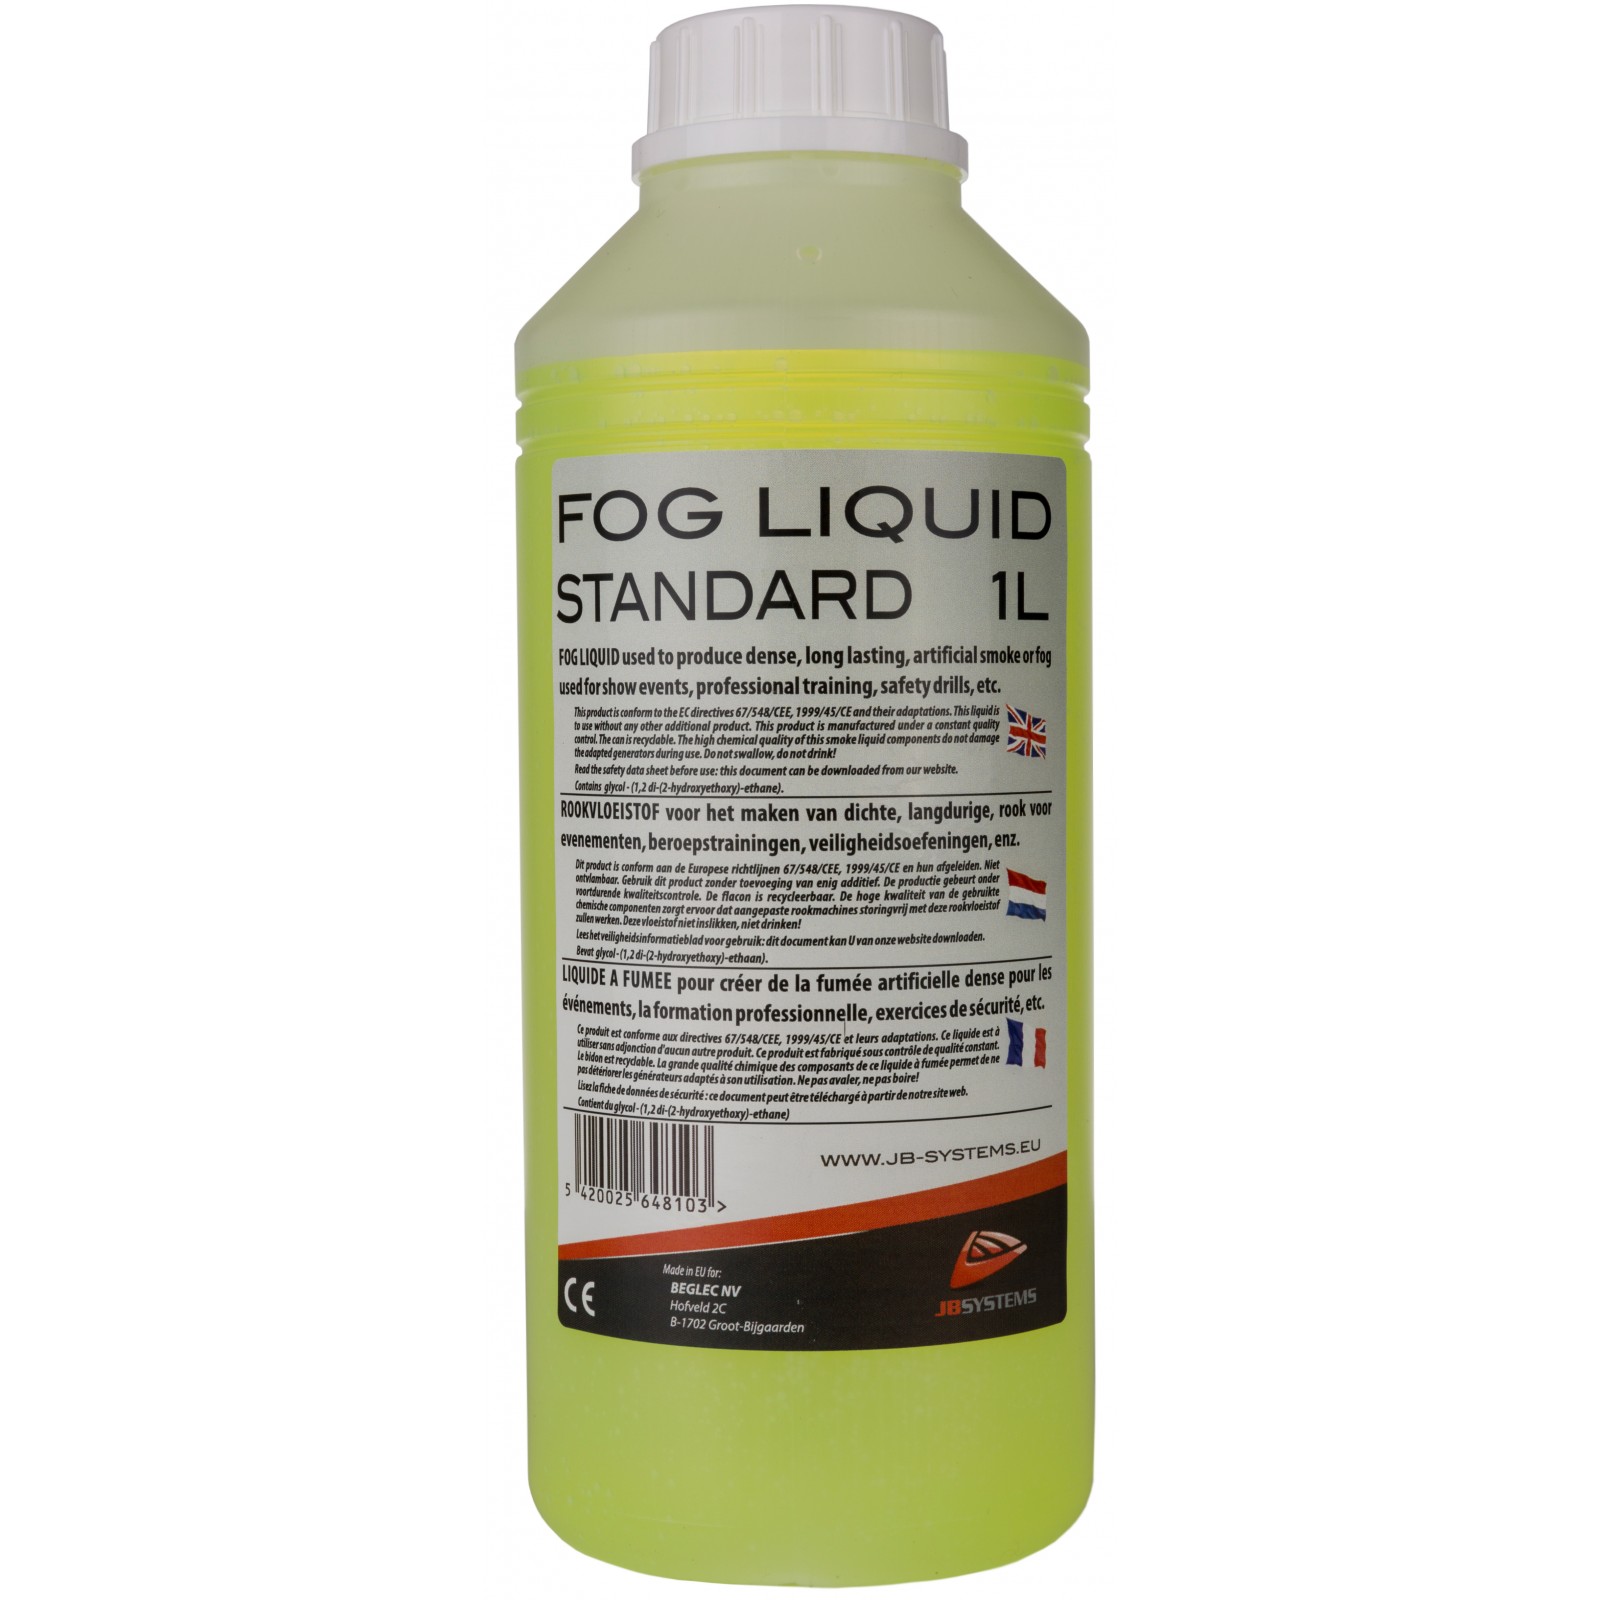 FOG LIQUID STD 1L, rookvloeistof standaard, 1L